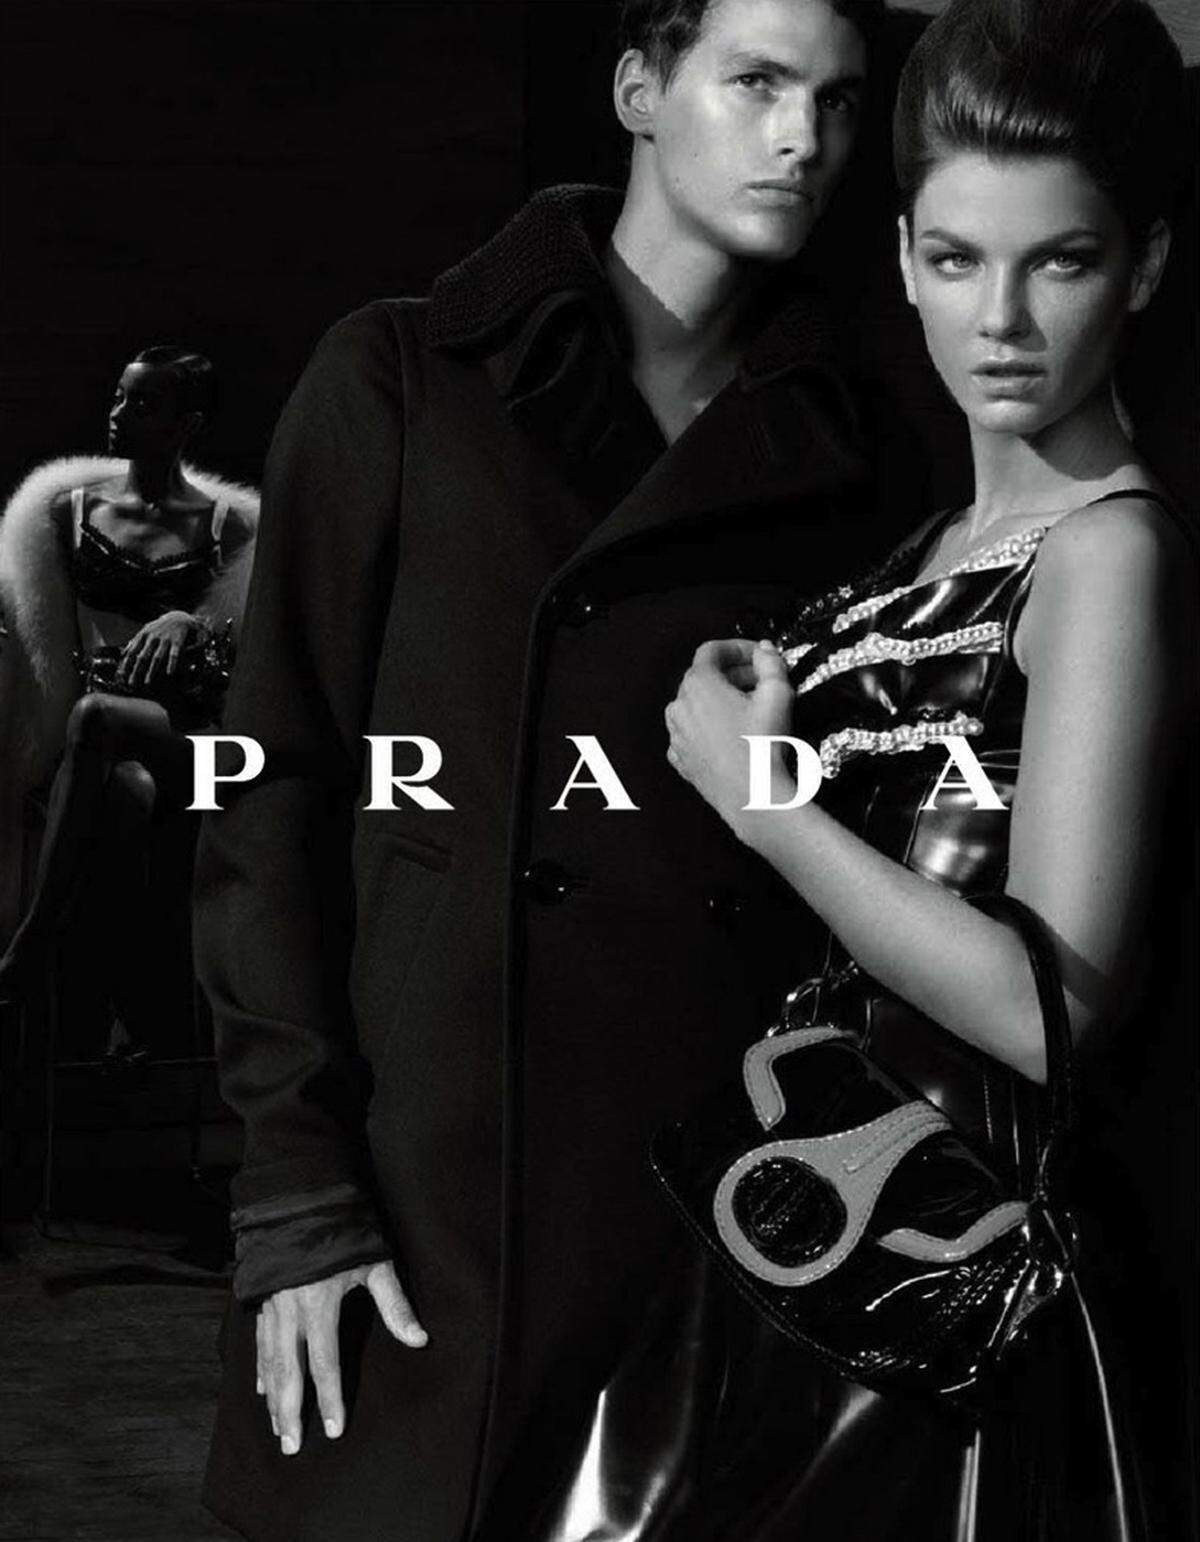 Bilder wie diese rufen - gerechtfertigt oder nicht- immer wieder Kritiker auf den Plan. So auch das Bild von Prada, auf dem ebenfalls ein dunkelhäutiges Model im Hintergrund zu sehen ist, während die beiden weißen Models viel deutlicher im Vordergrund gezeigt werden.